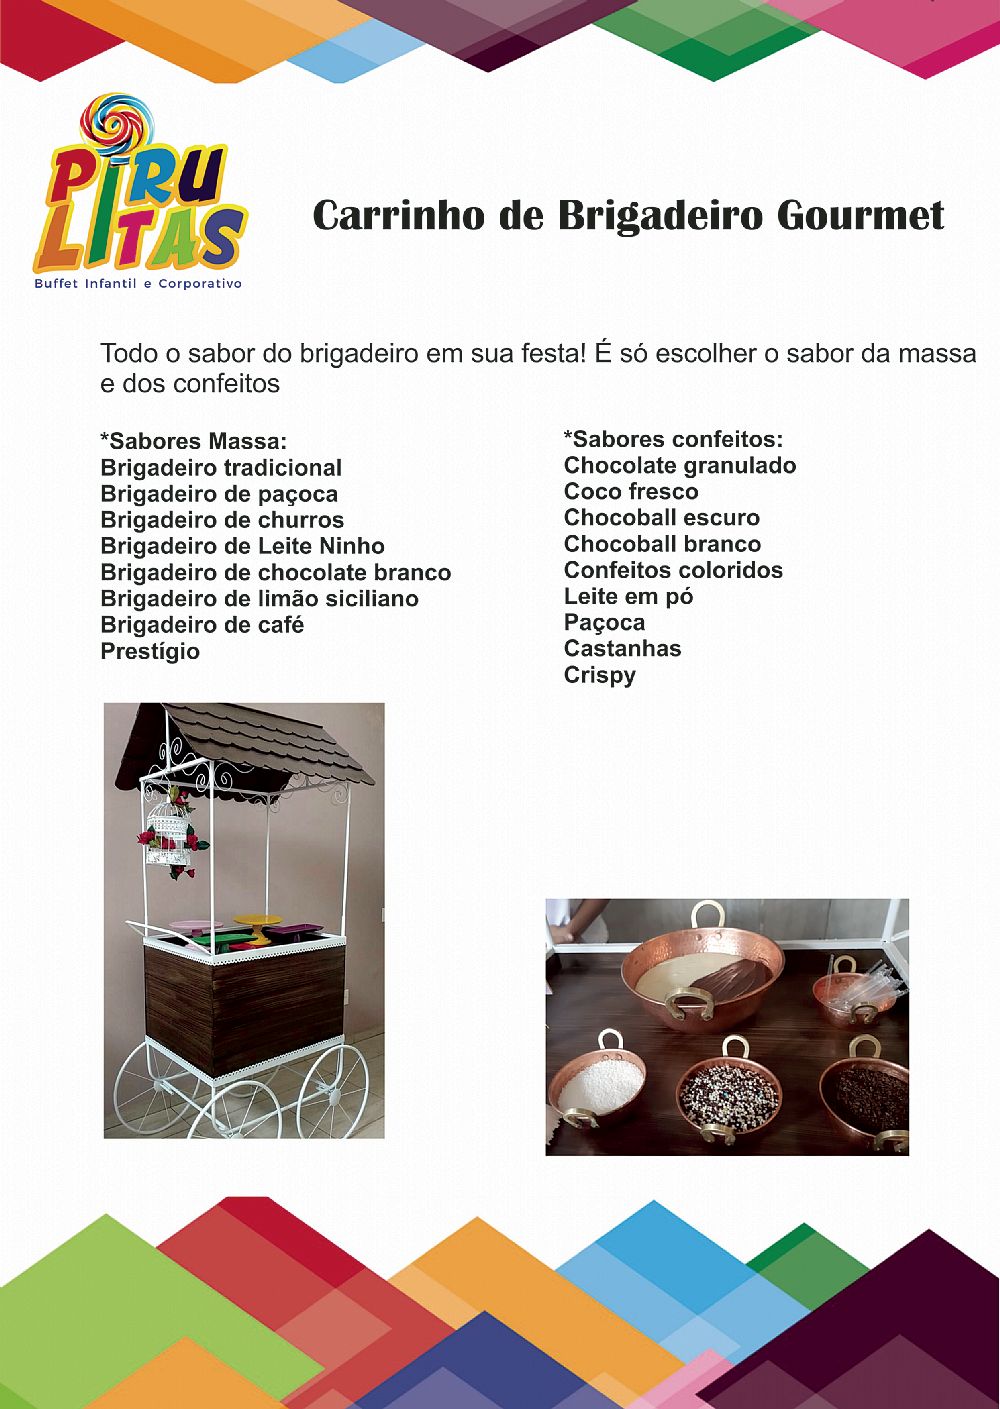 Sonheria Gourmet - carrinhosgourmet.site.com.br